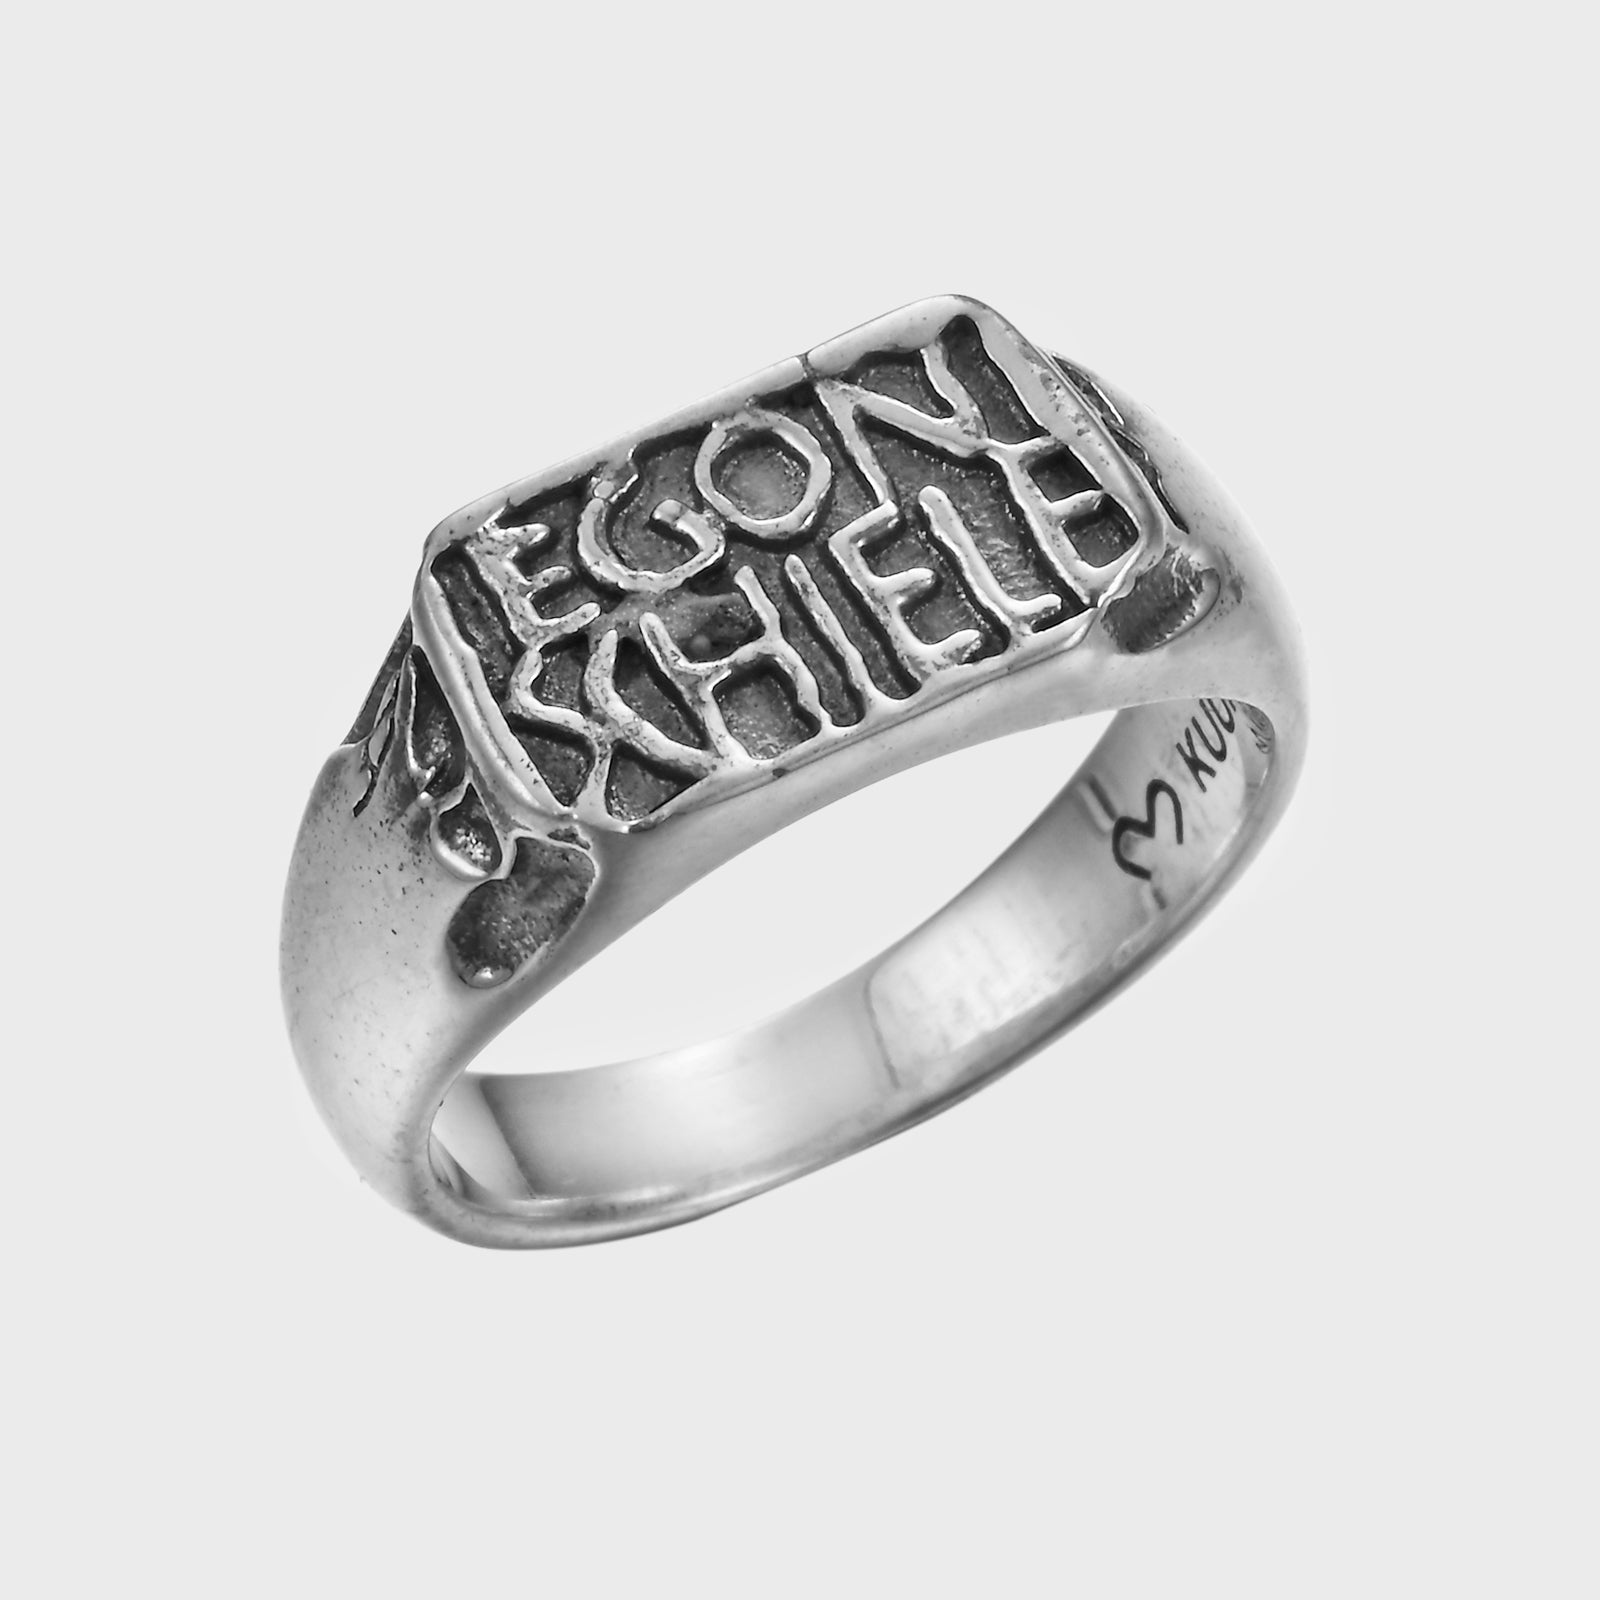 Schiele's Signature - Ring